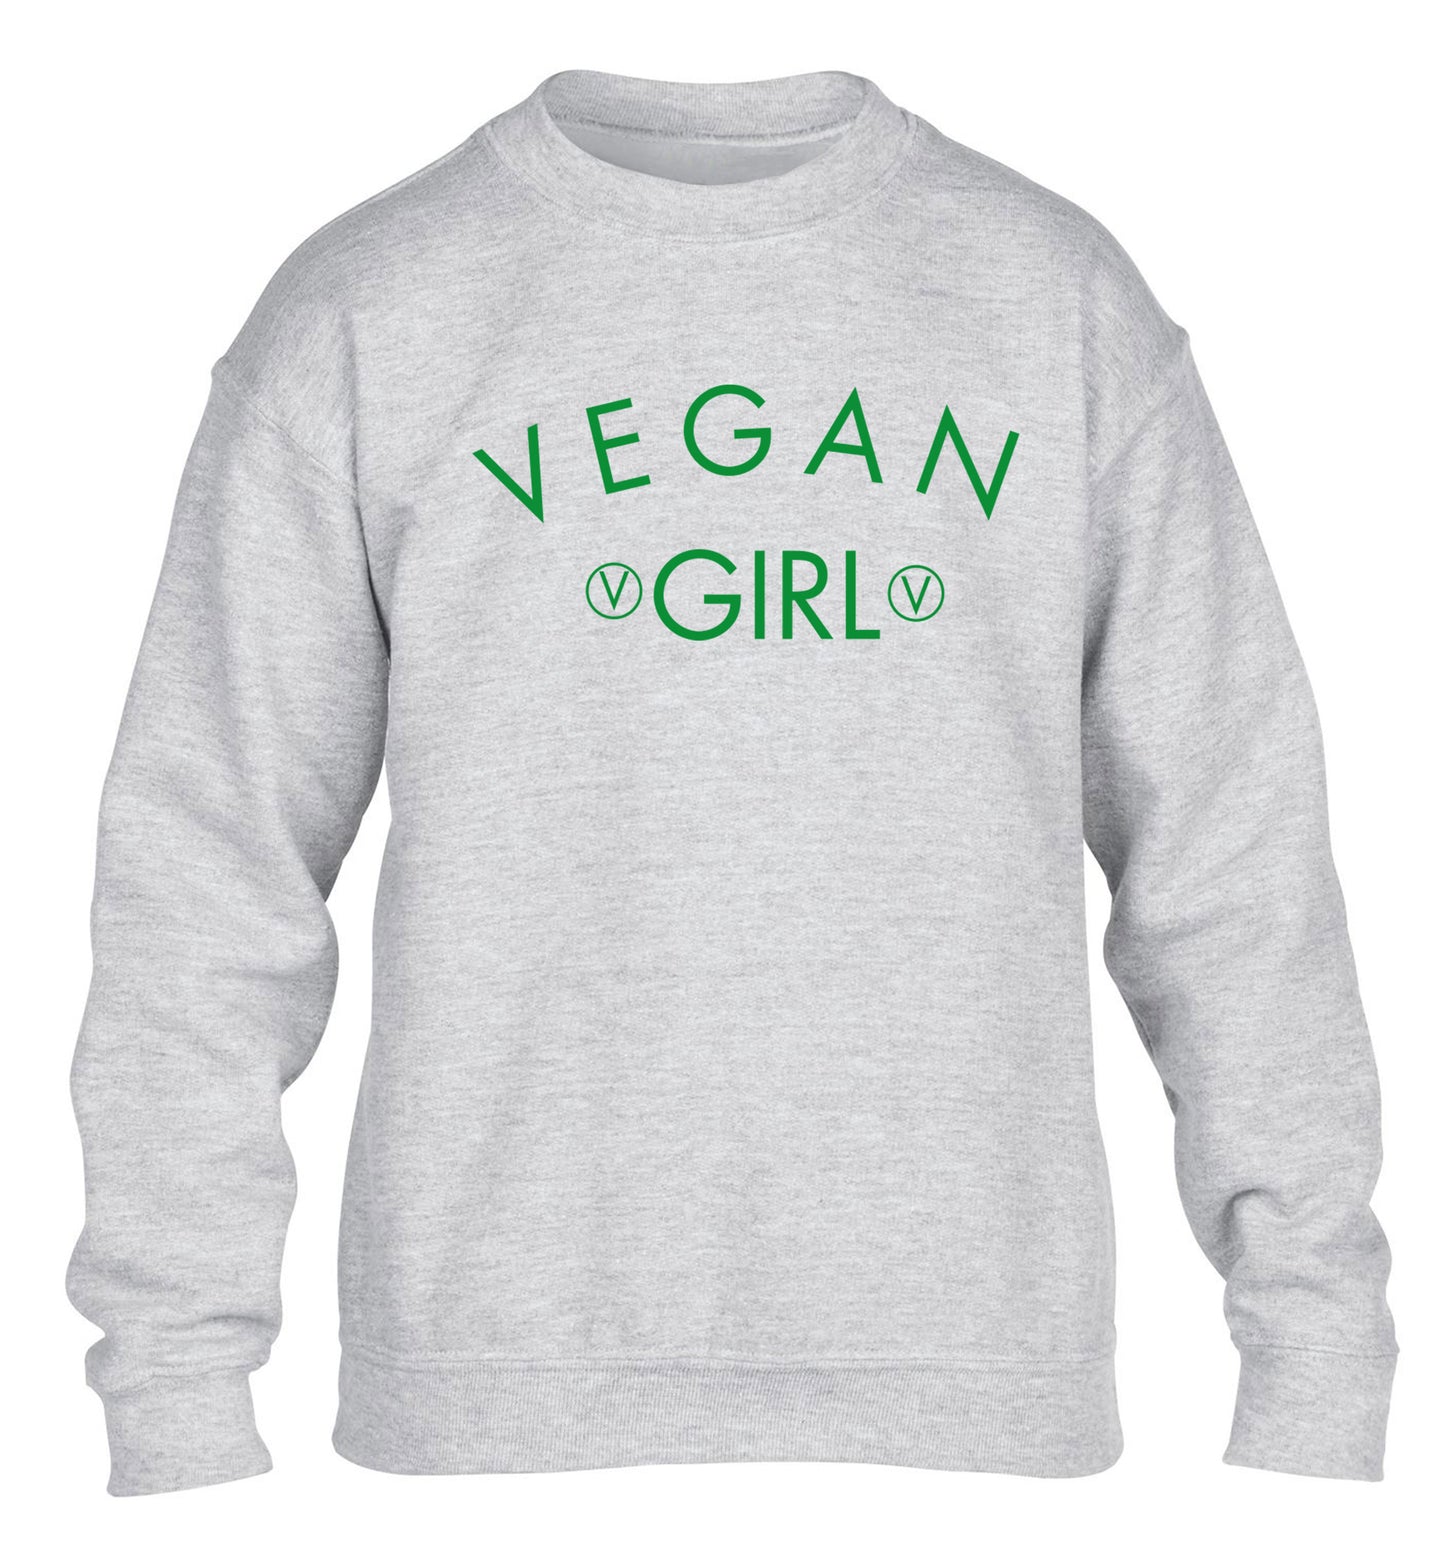 Vegan girl children's grey sweater 12-14 Years